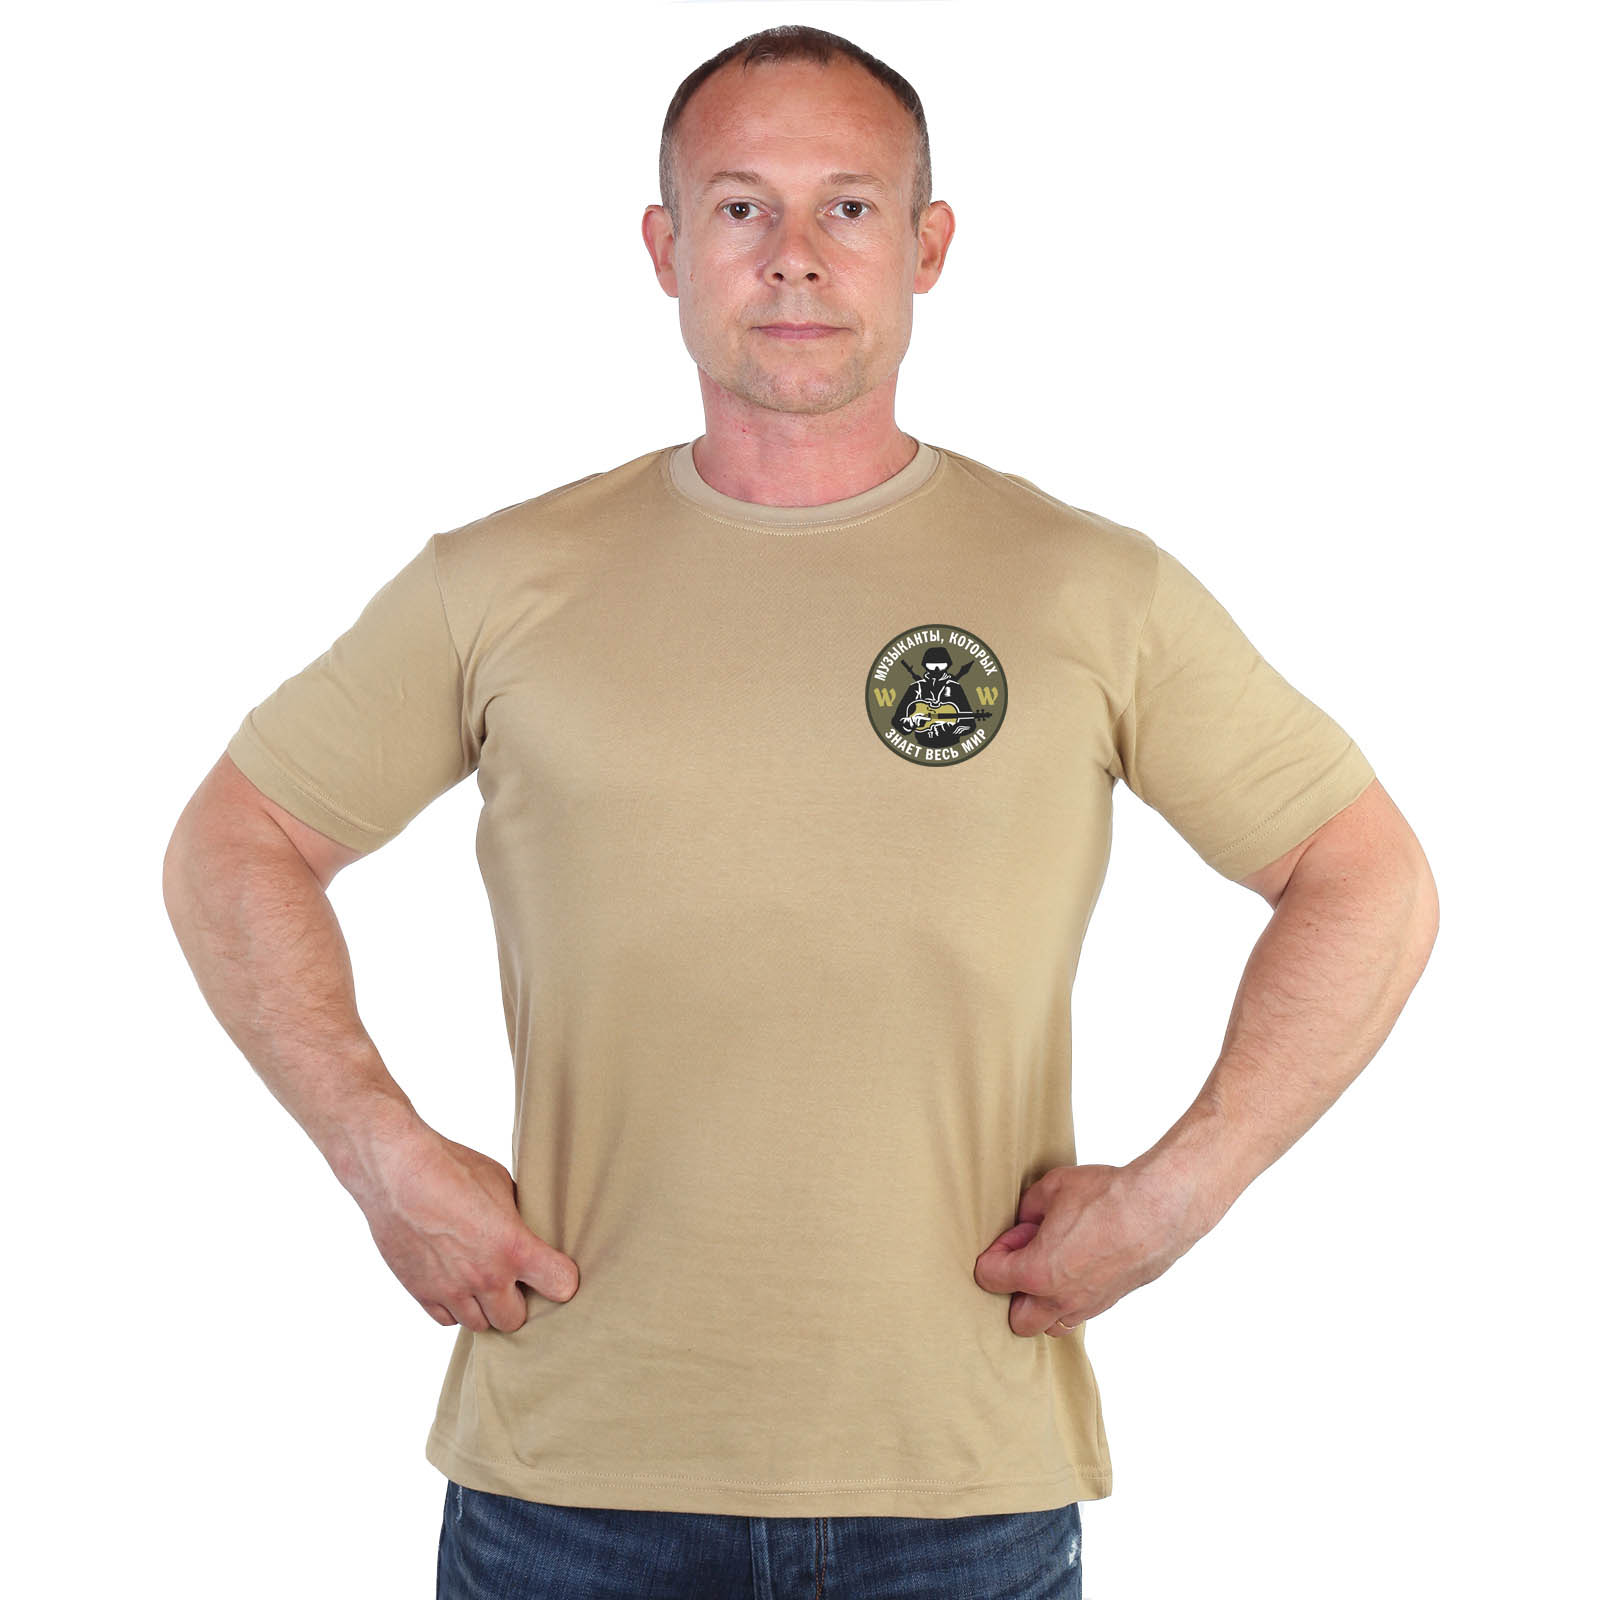 Песочная футболка с термоаппликацией "Группа Вагнера"